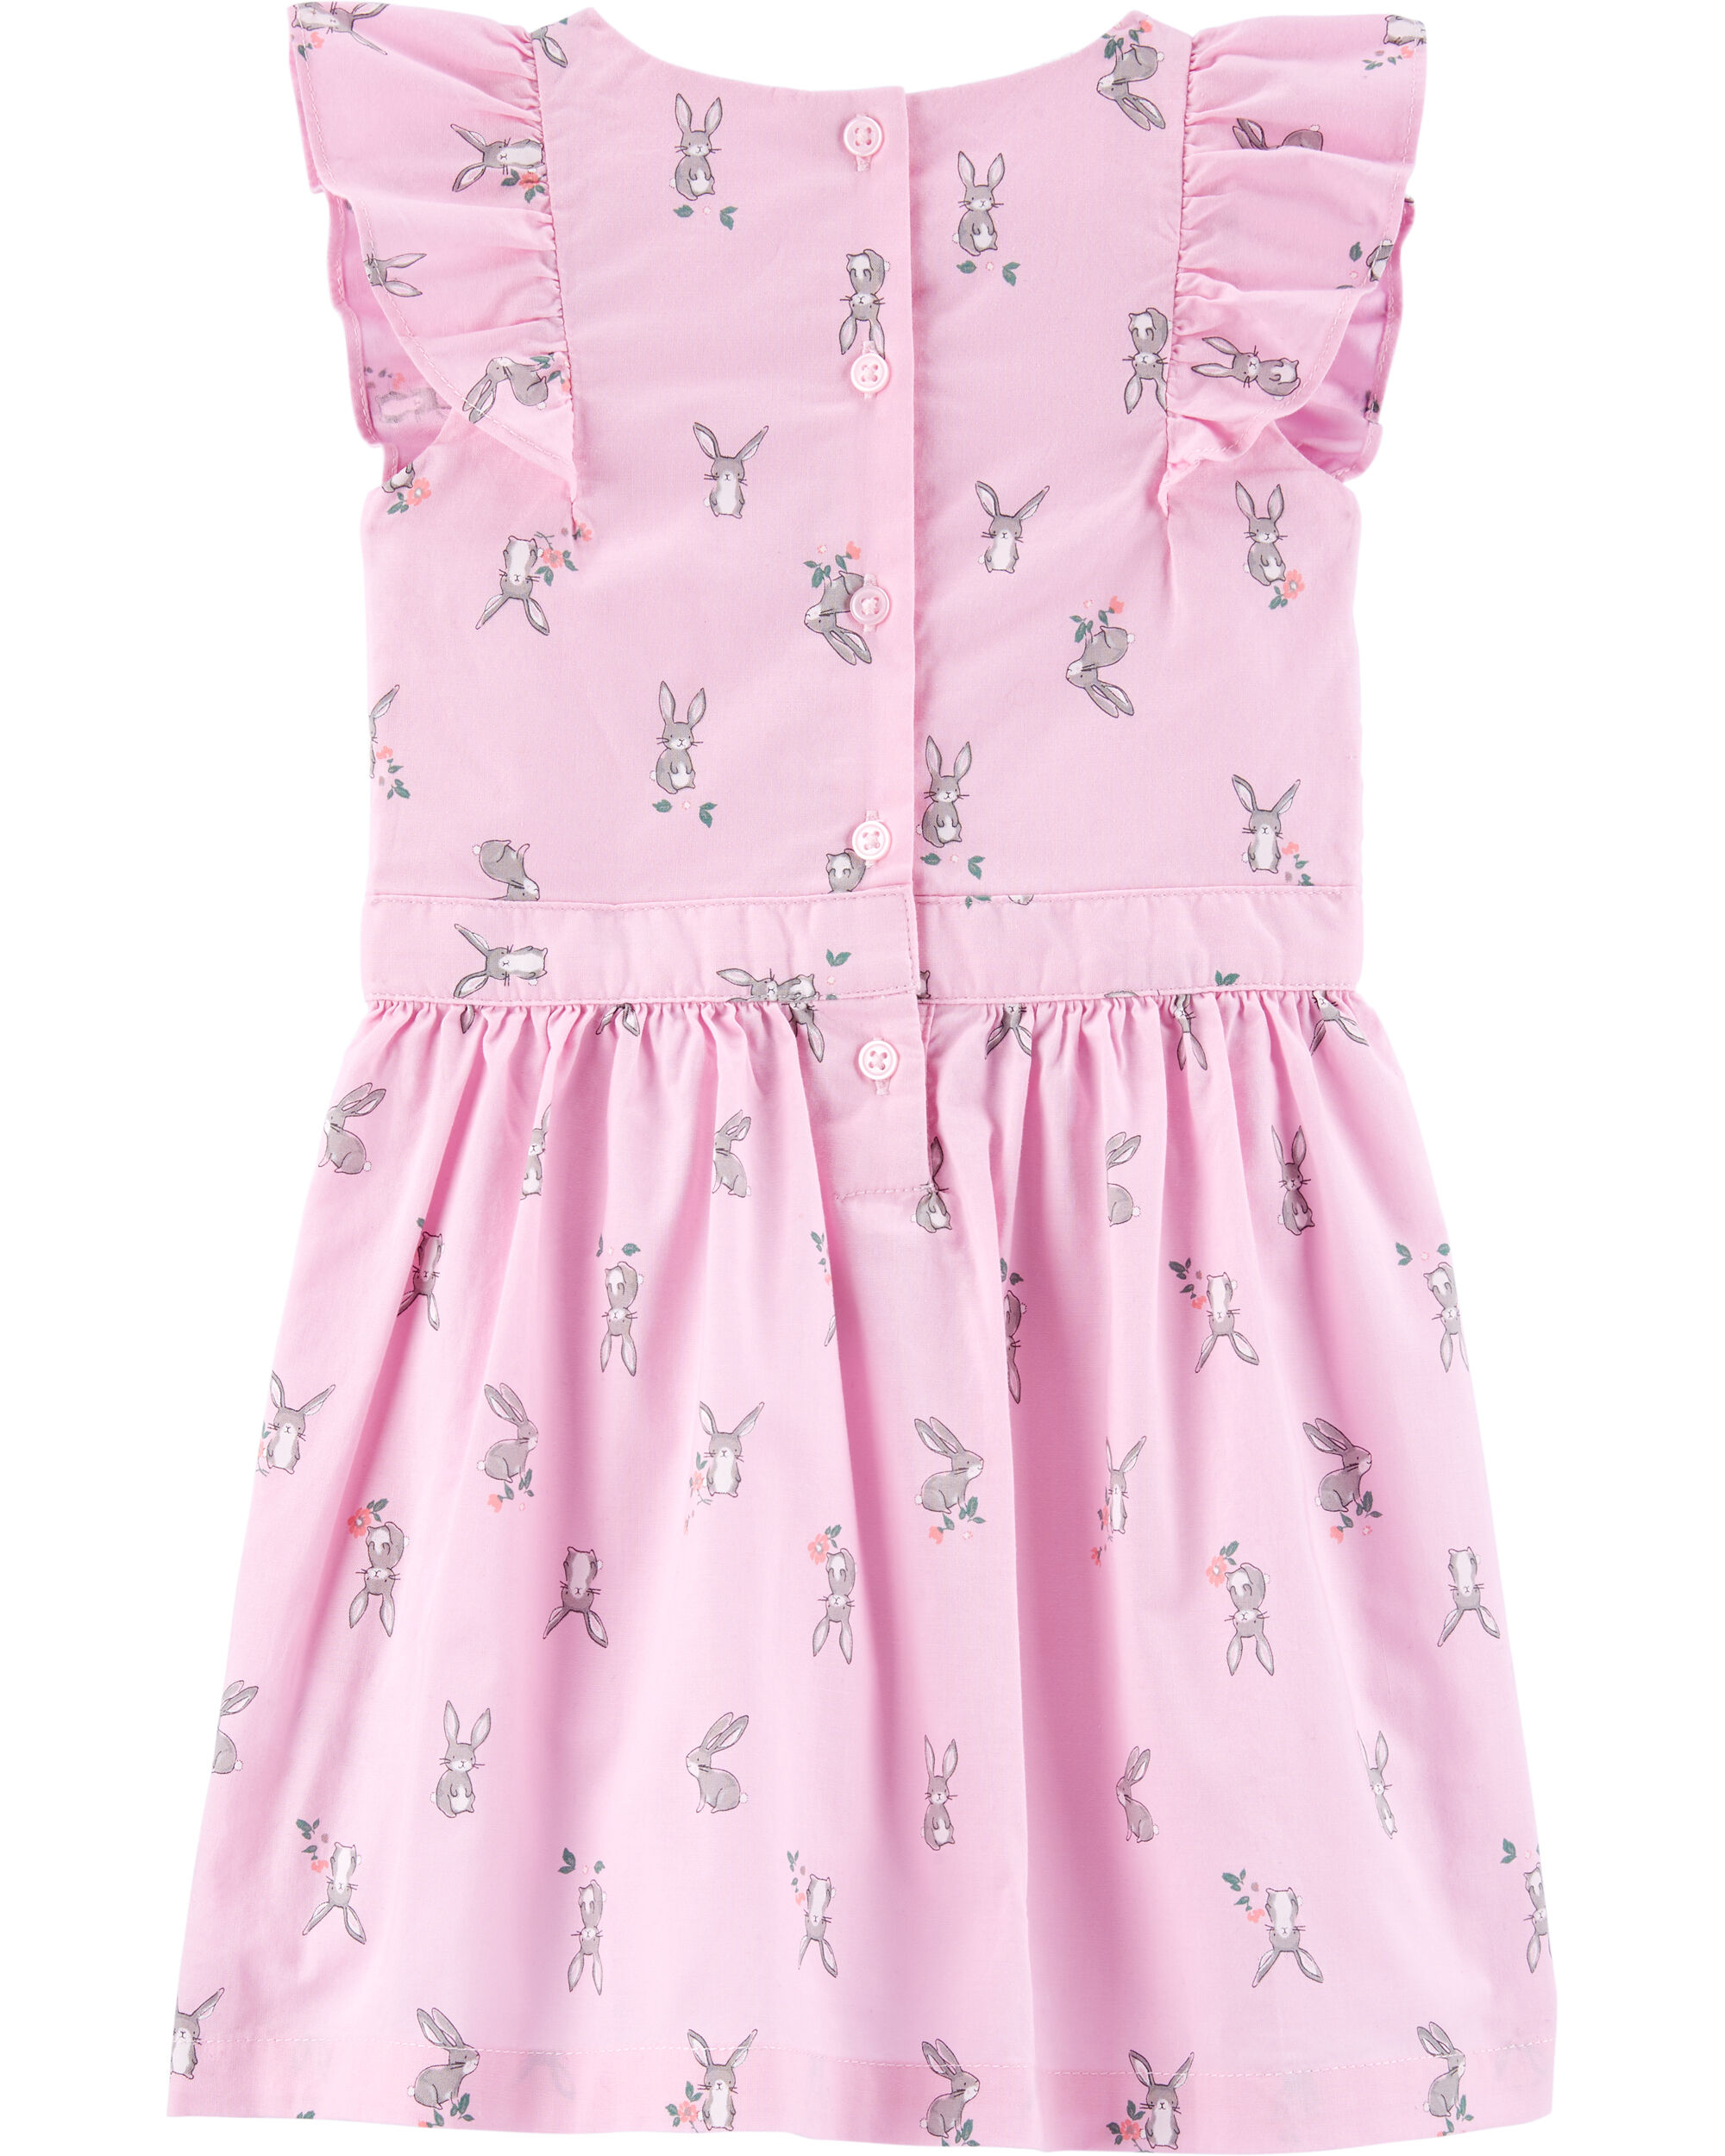 carters pink bunny dress